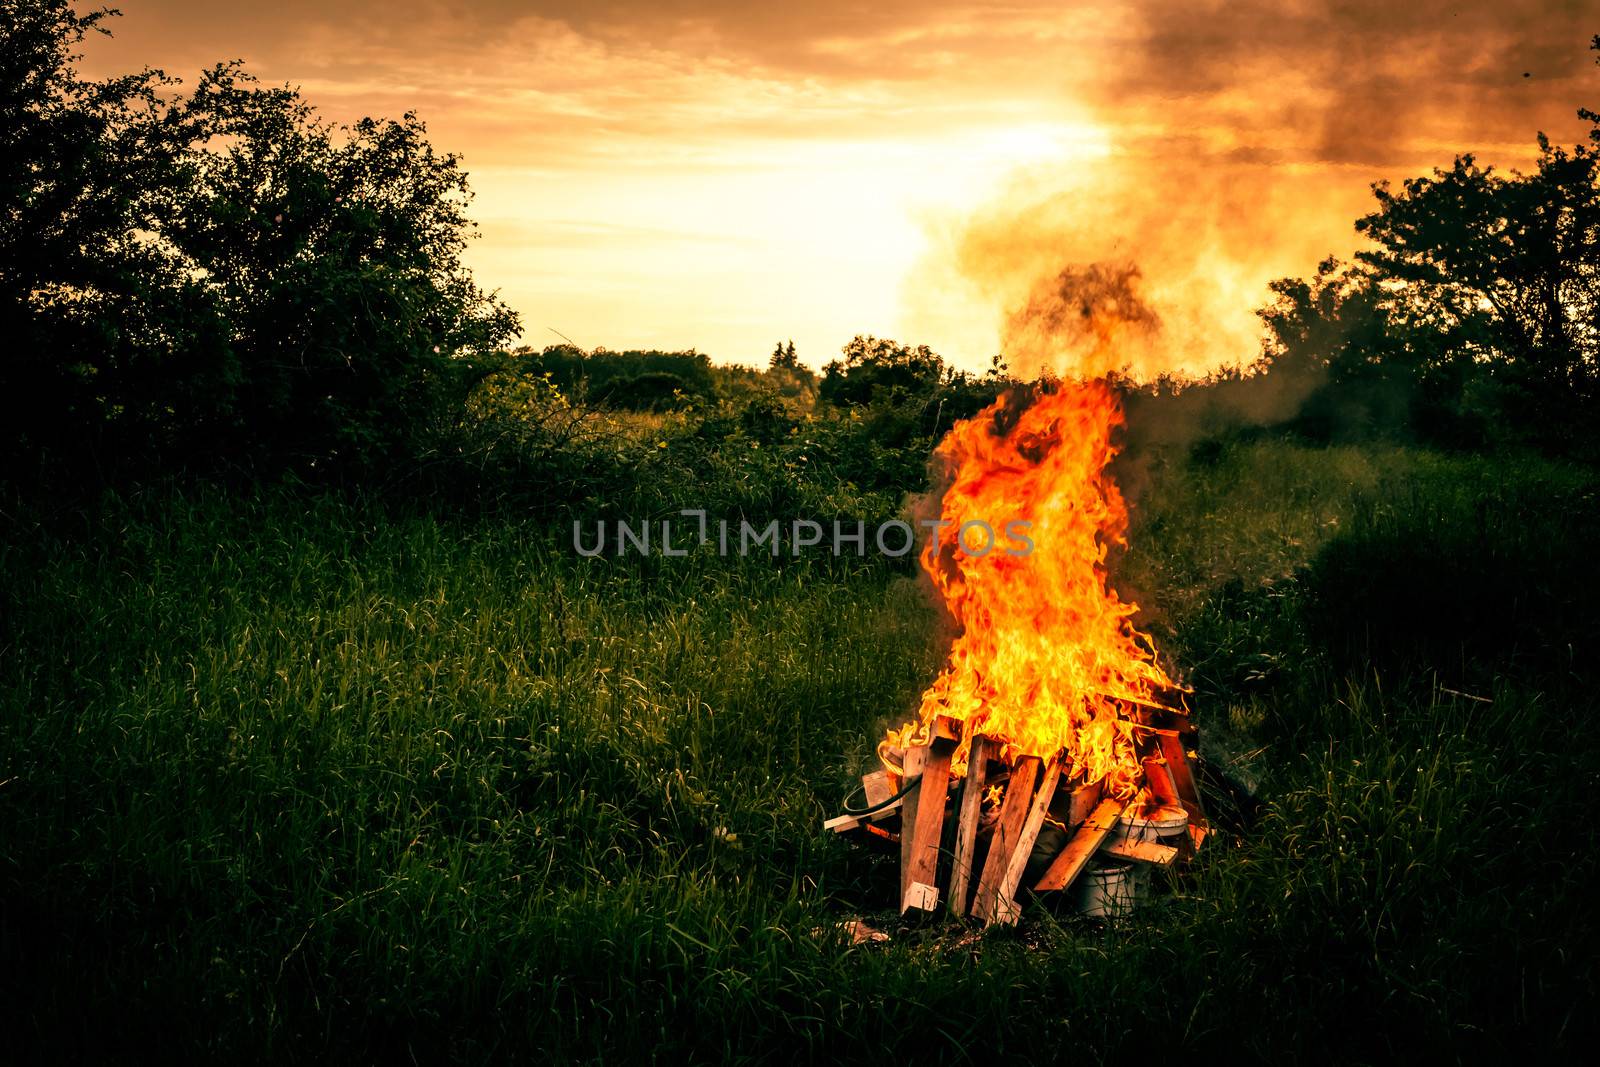 Bonfire scenery by Sportactive